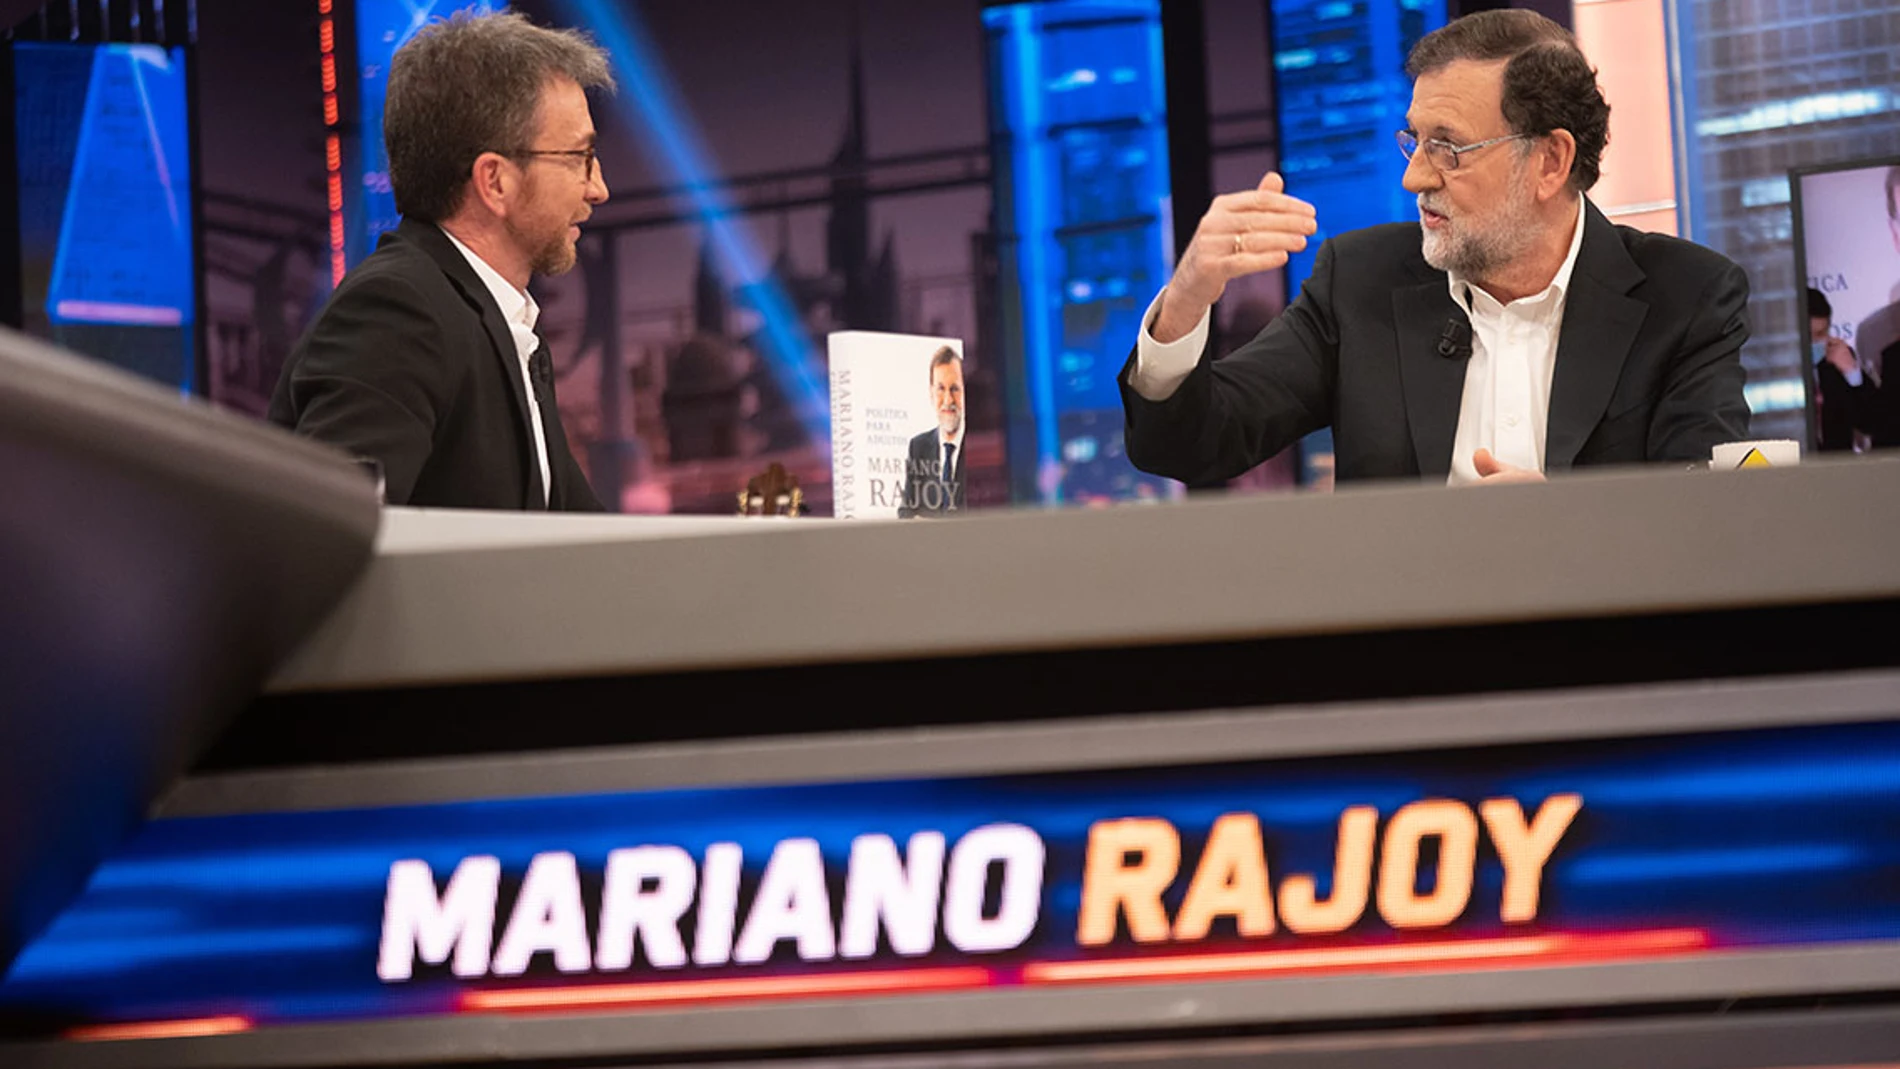 Mariano Rajoy, sobre el lenguaje inclusivo: "No tiene sentido que nos quieran imponer estas cosas"